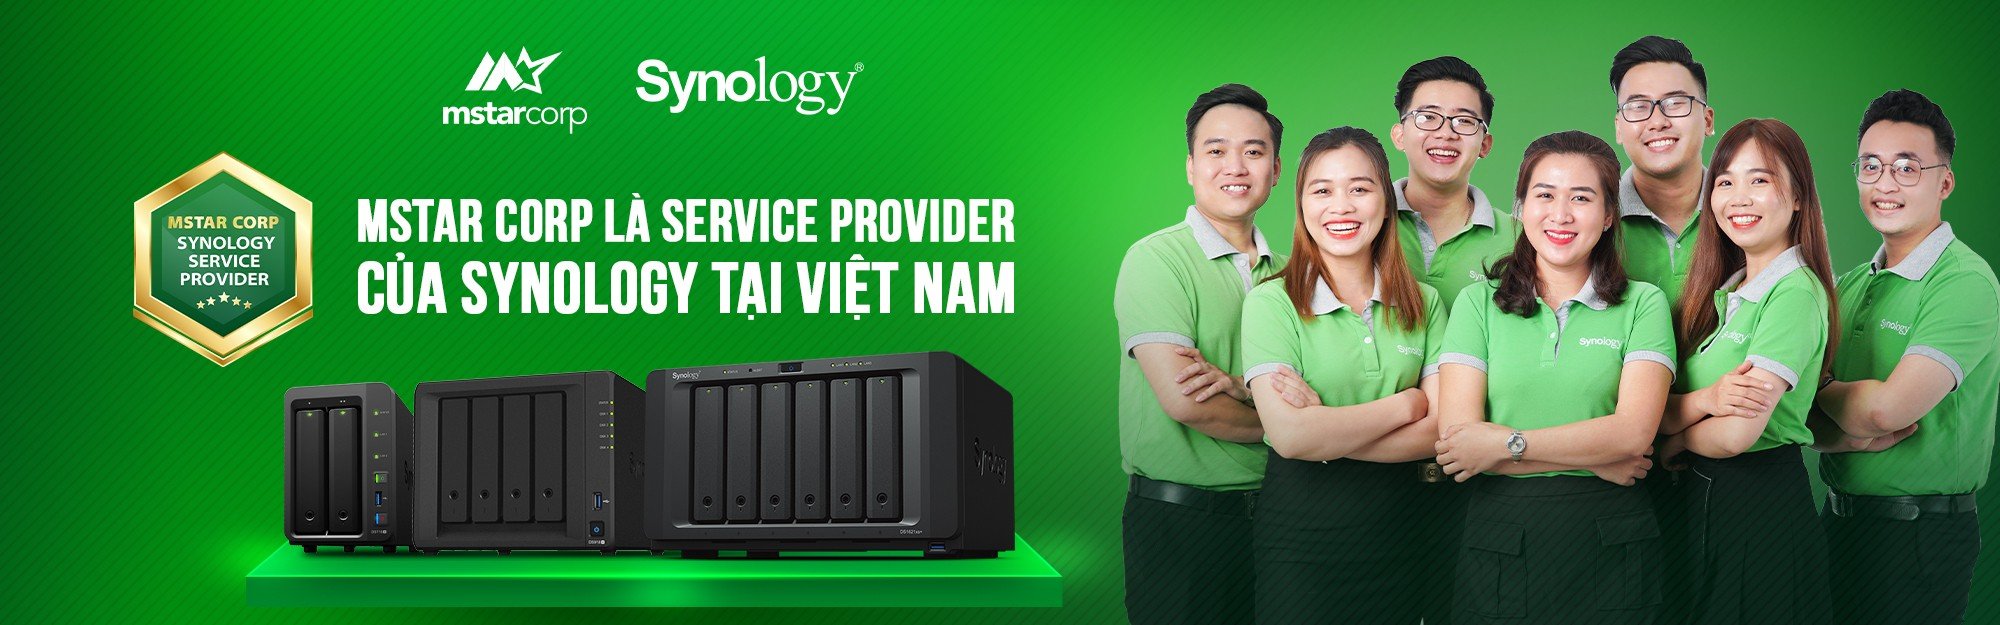 mstar corp là service provider duy nhất của synology tại Việt NAM